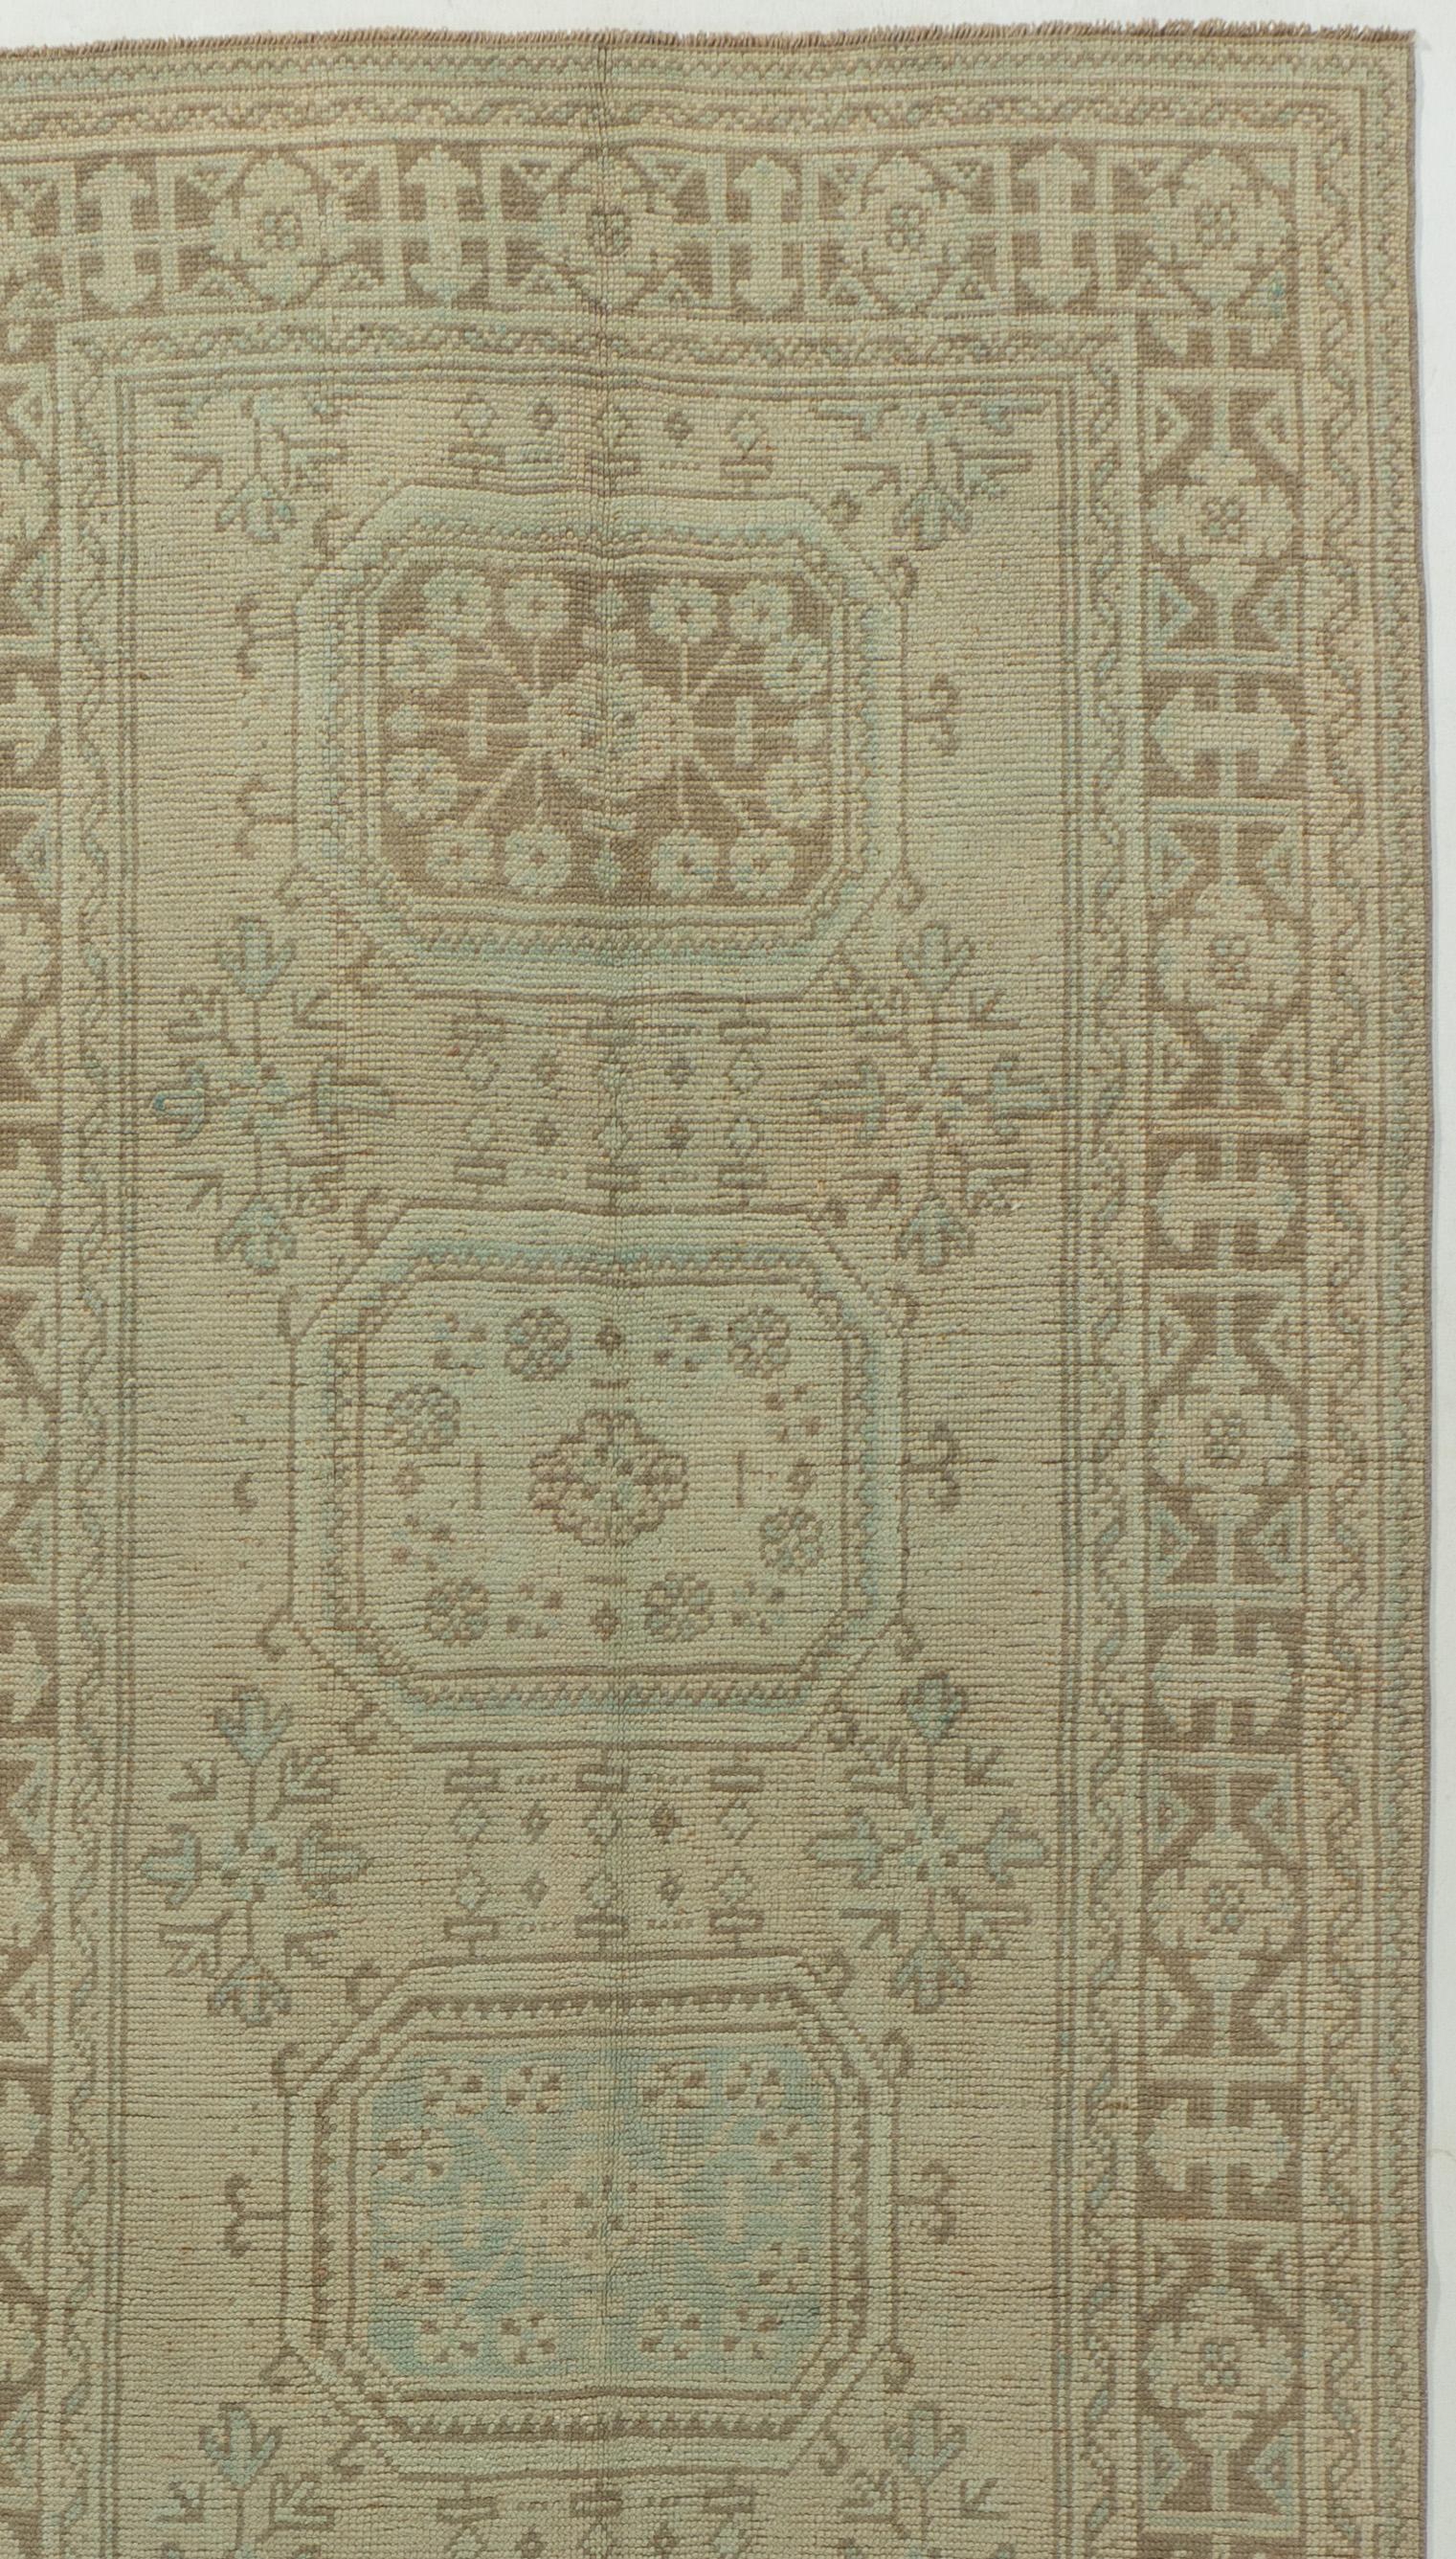 Vintage Turkish Oushak Runner 4'4 x 11'11. La qualité luxueuse de la laine (pour laquelle les Oushaks ont toujours été célèbres) a contribué à la vivacité des couleurs. Contrairement à la plupart des tapis turcs, les tapis Oushak ont été fortement